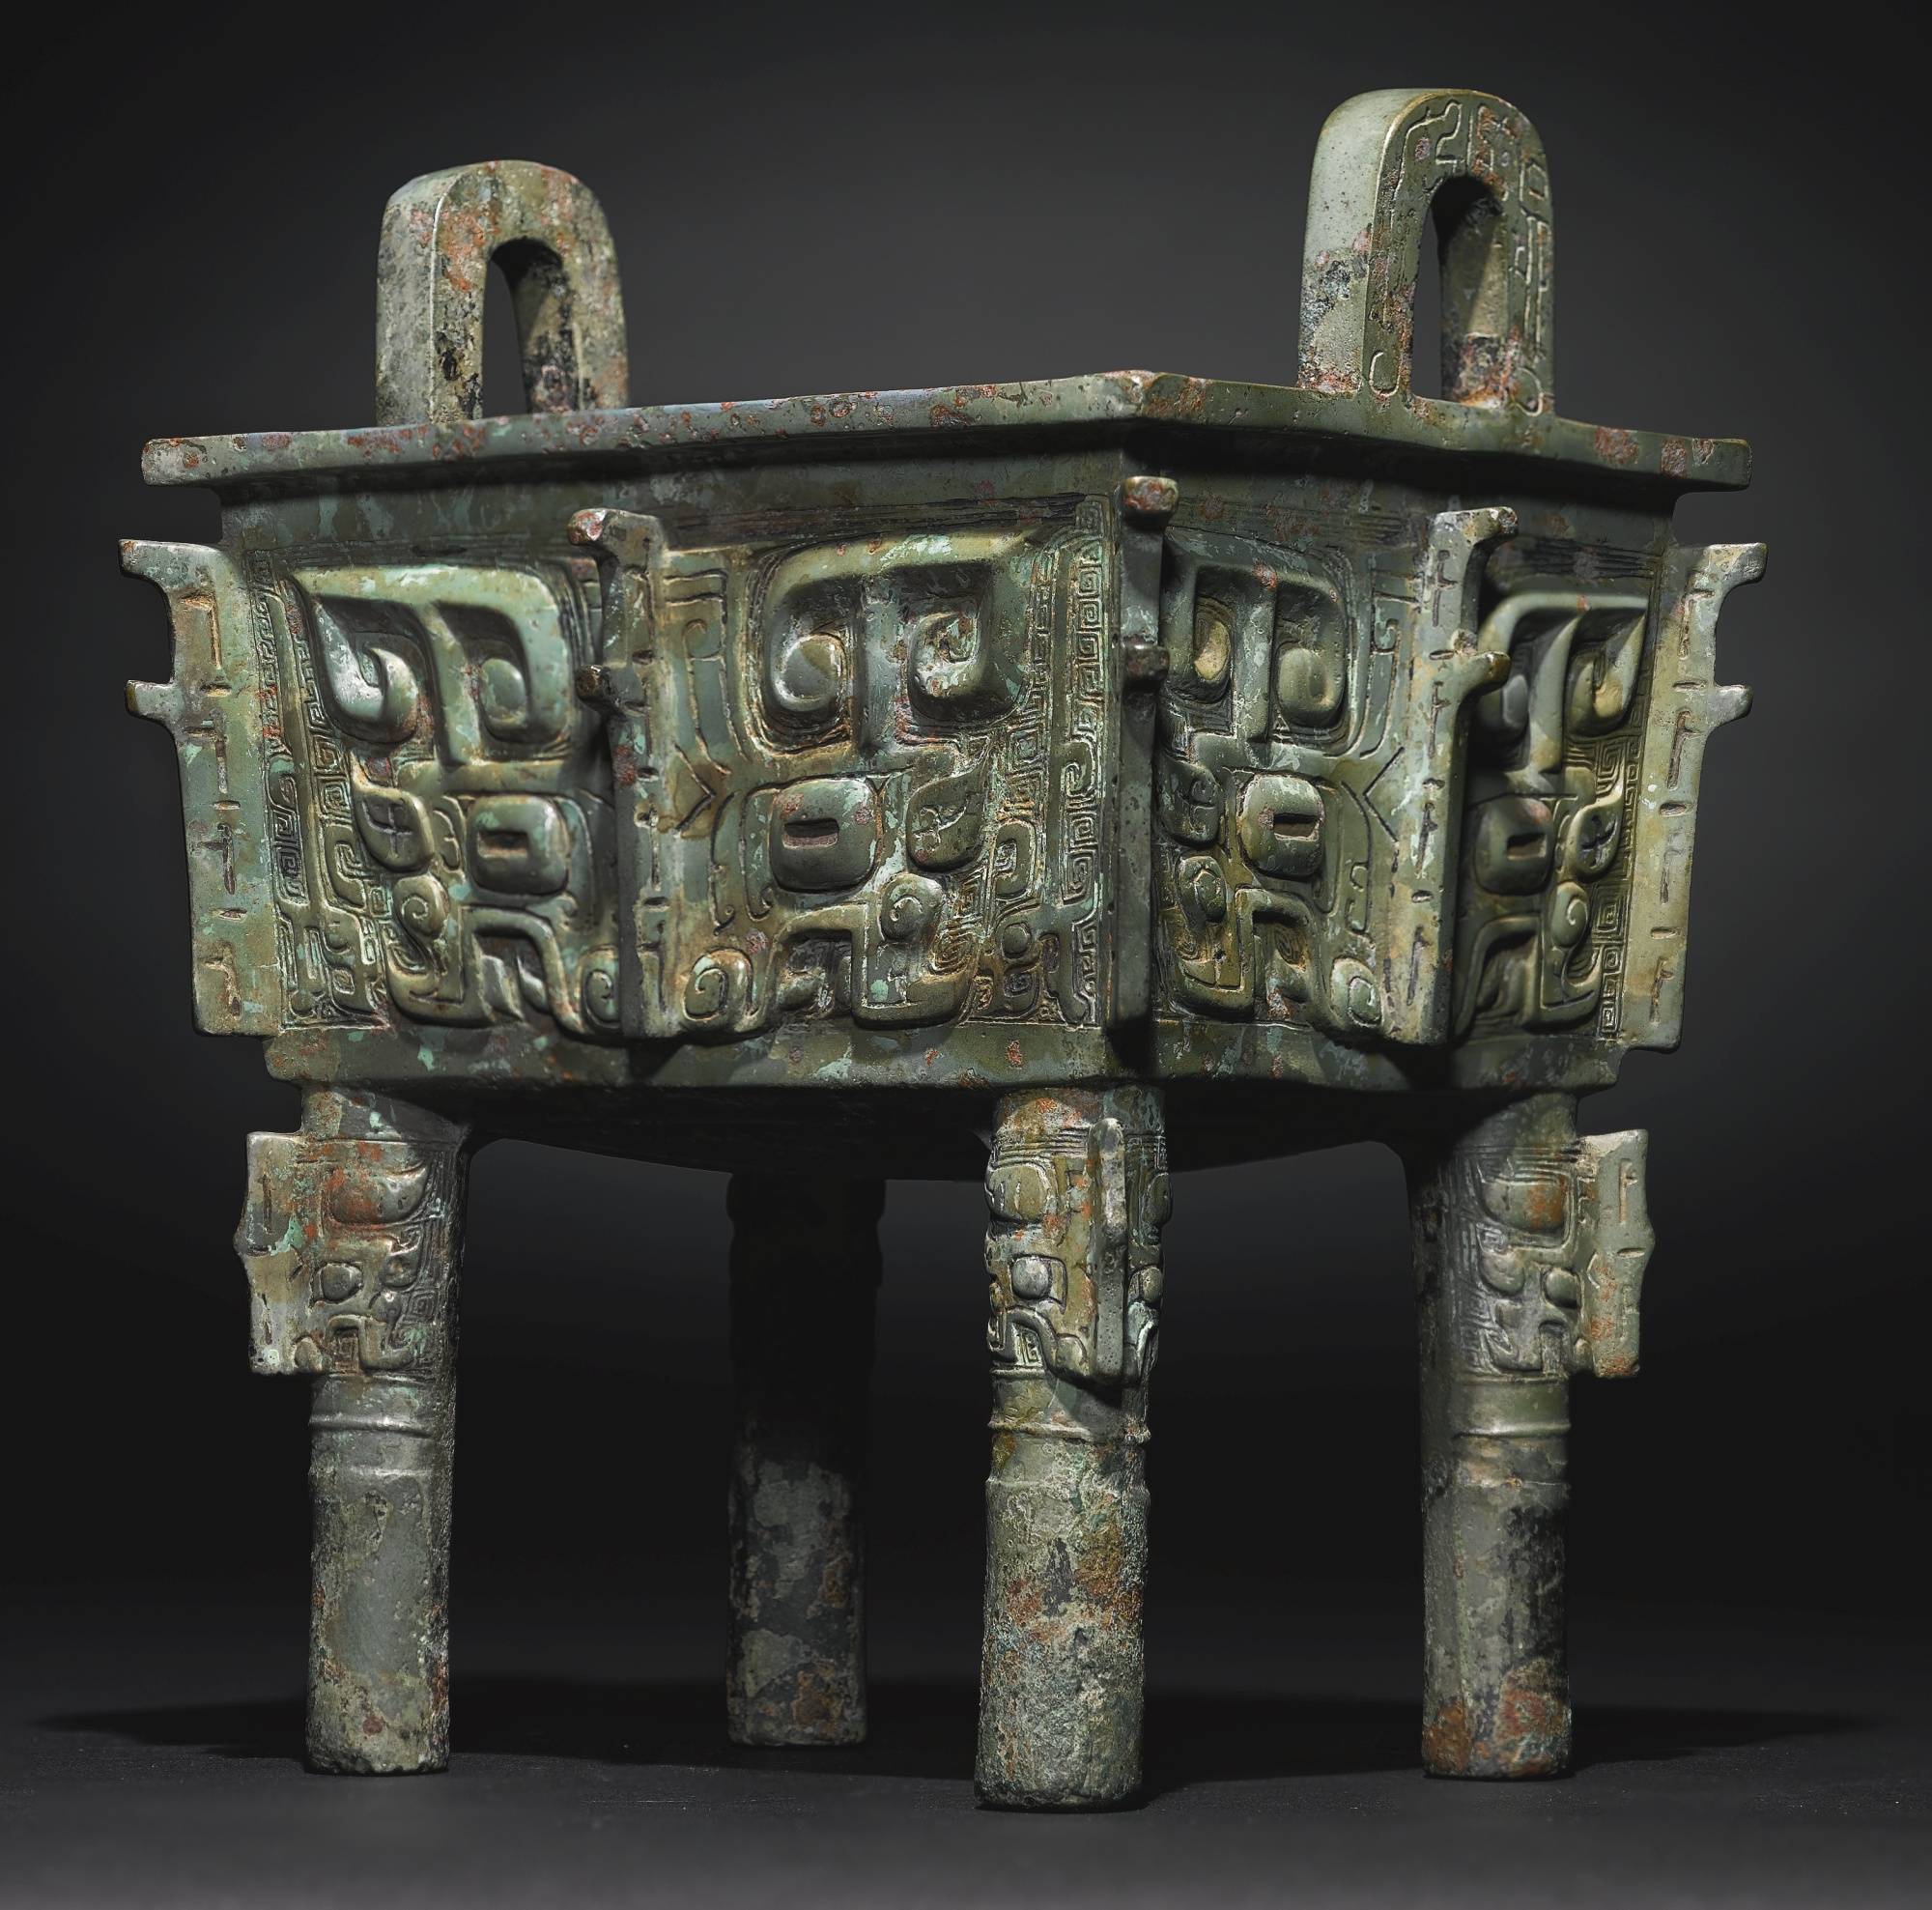 广东中博鉴定中心观赏古青铜器体味中国造型艺术